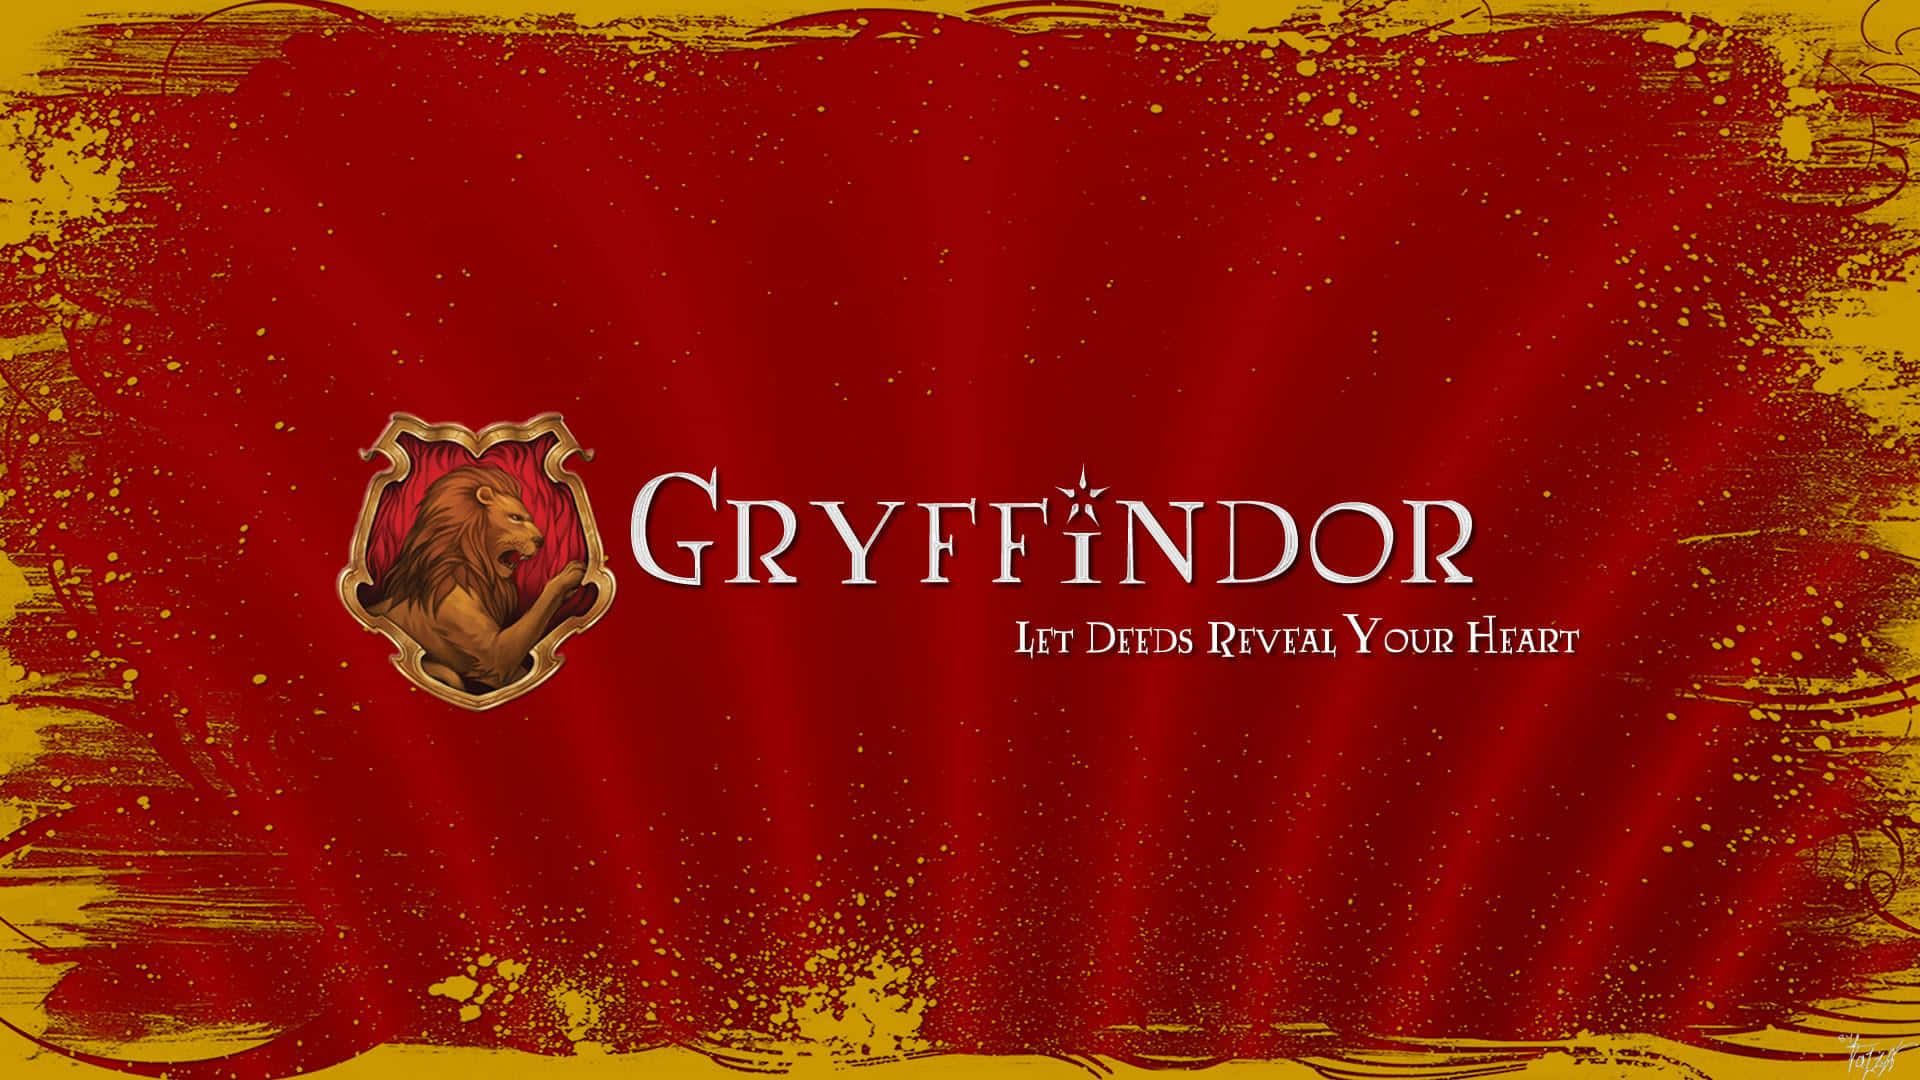 Stolthedaf Gryffindor.